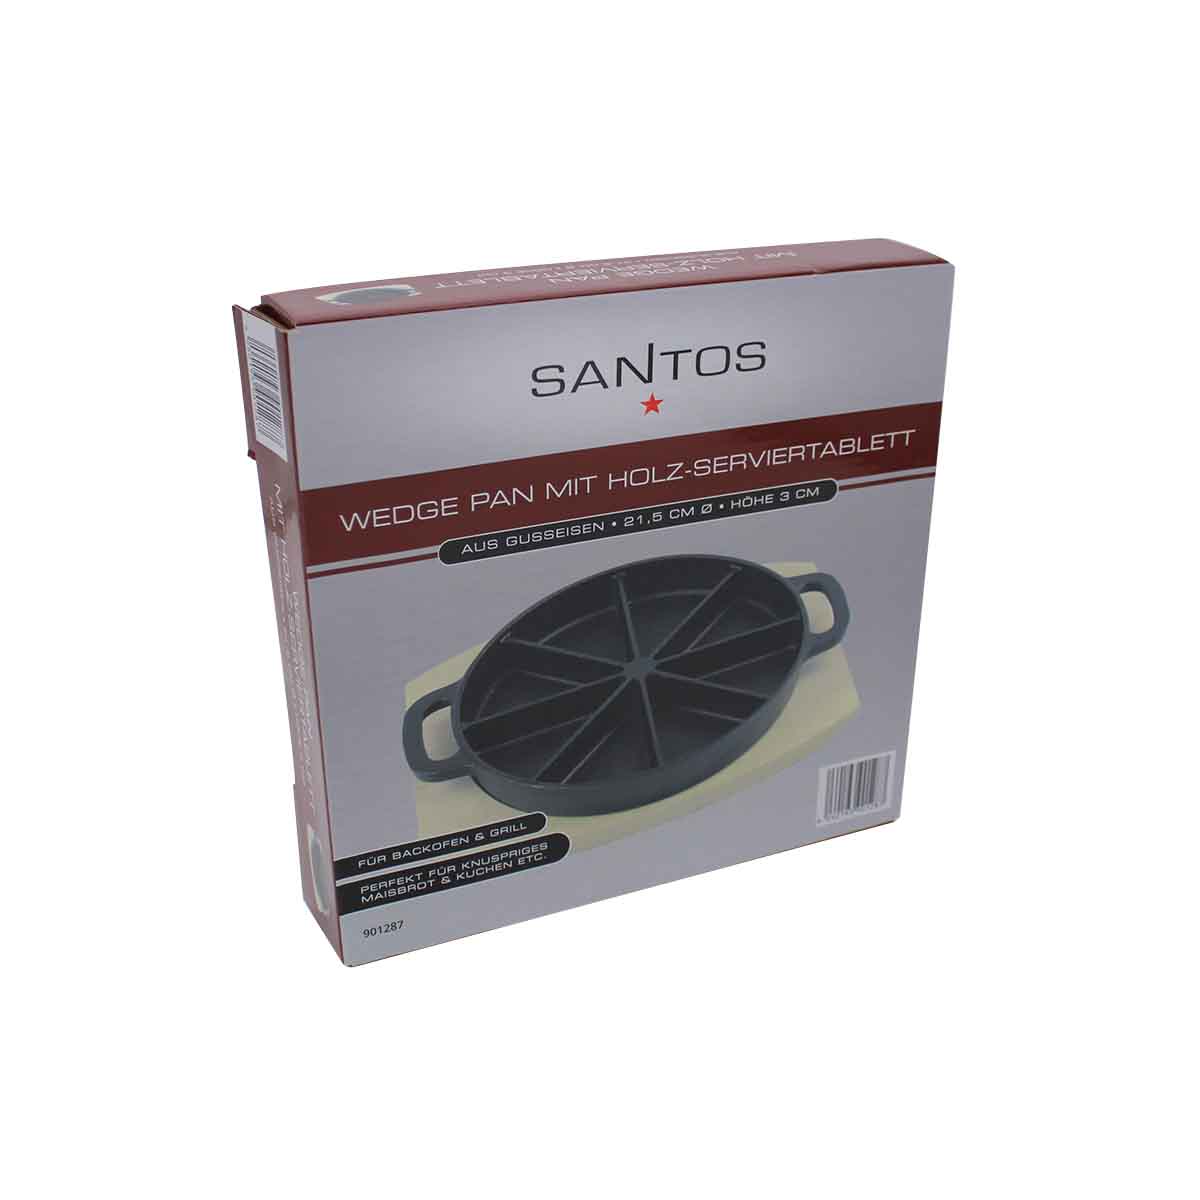 SANTOS Wedge Pan mit Holz-Serviertablett Ø 21,5 x 3 cm, Gusseisen, Paket